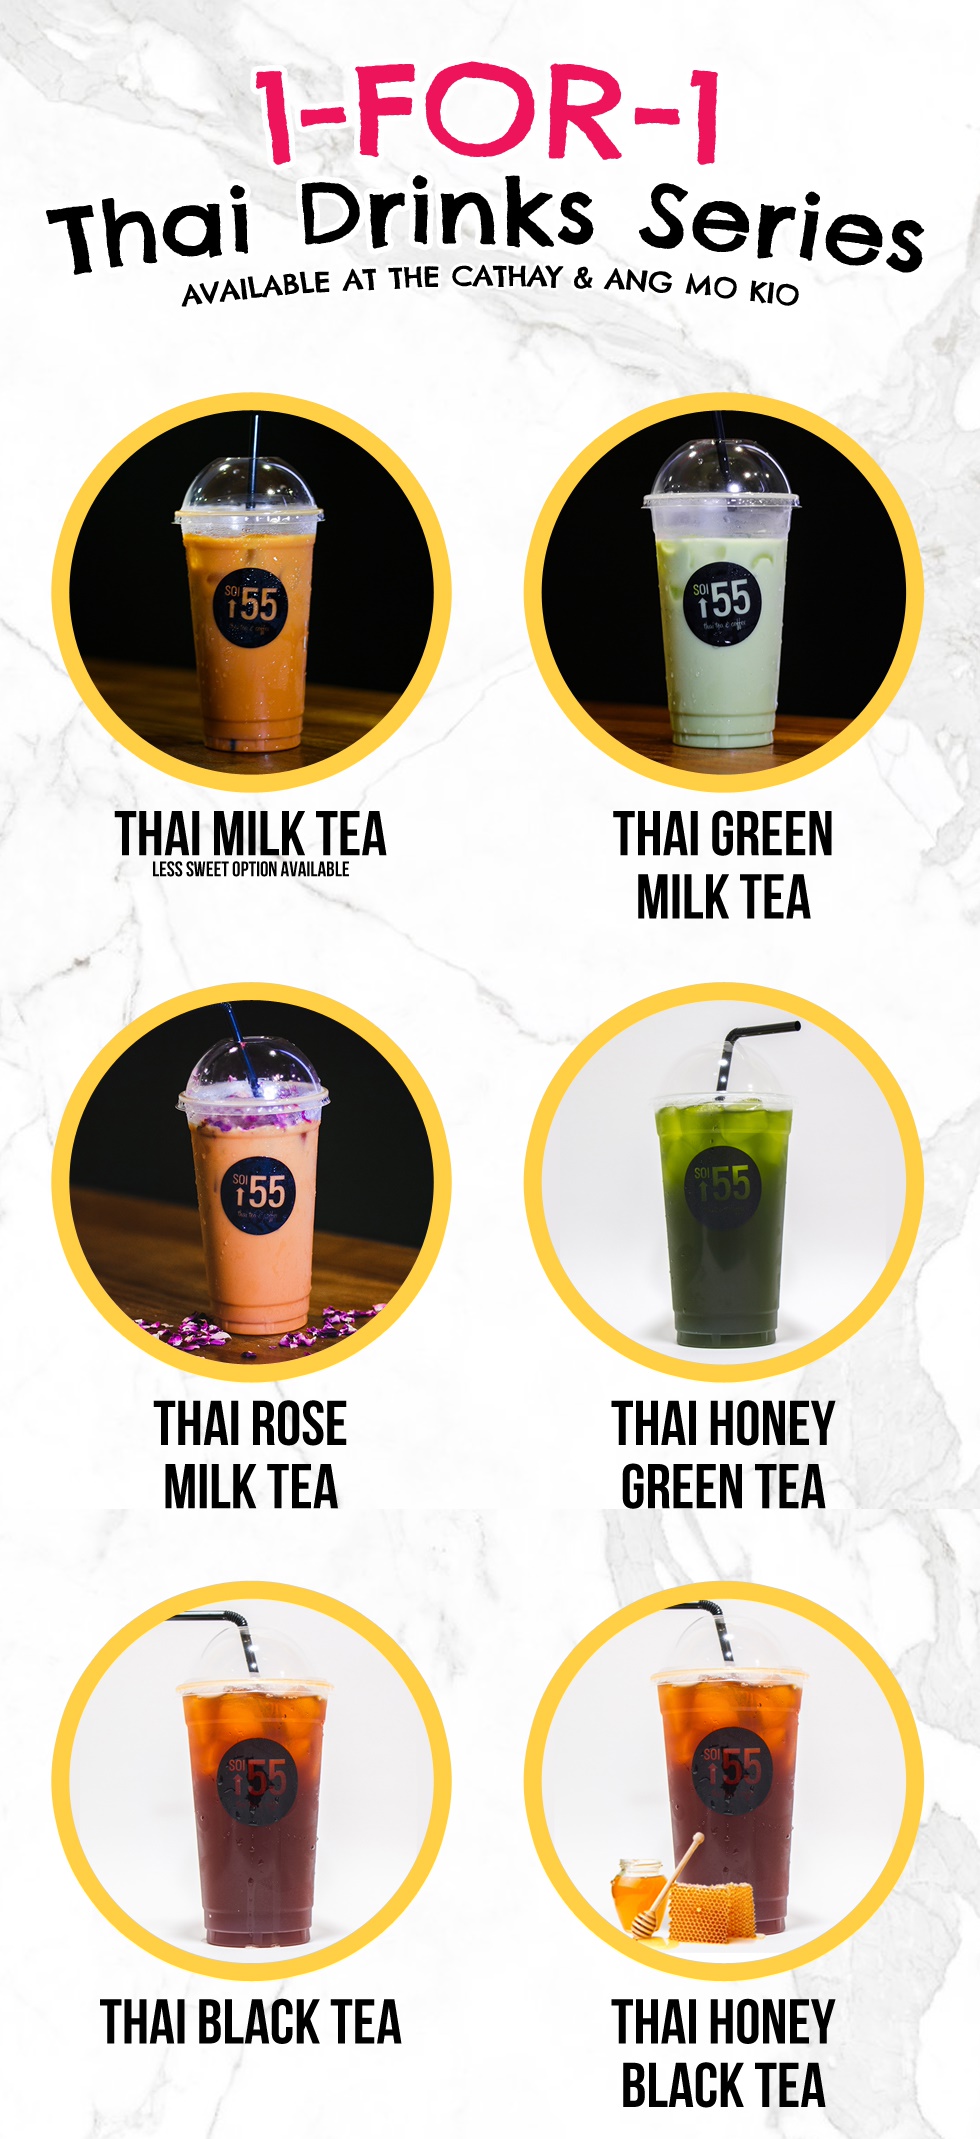 Soi 55: Enjoy 1-for-1 Thai Milk Tea & more with this voucher - 1